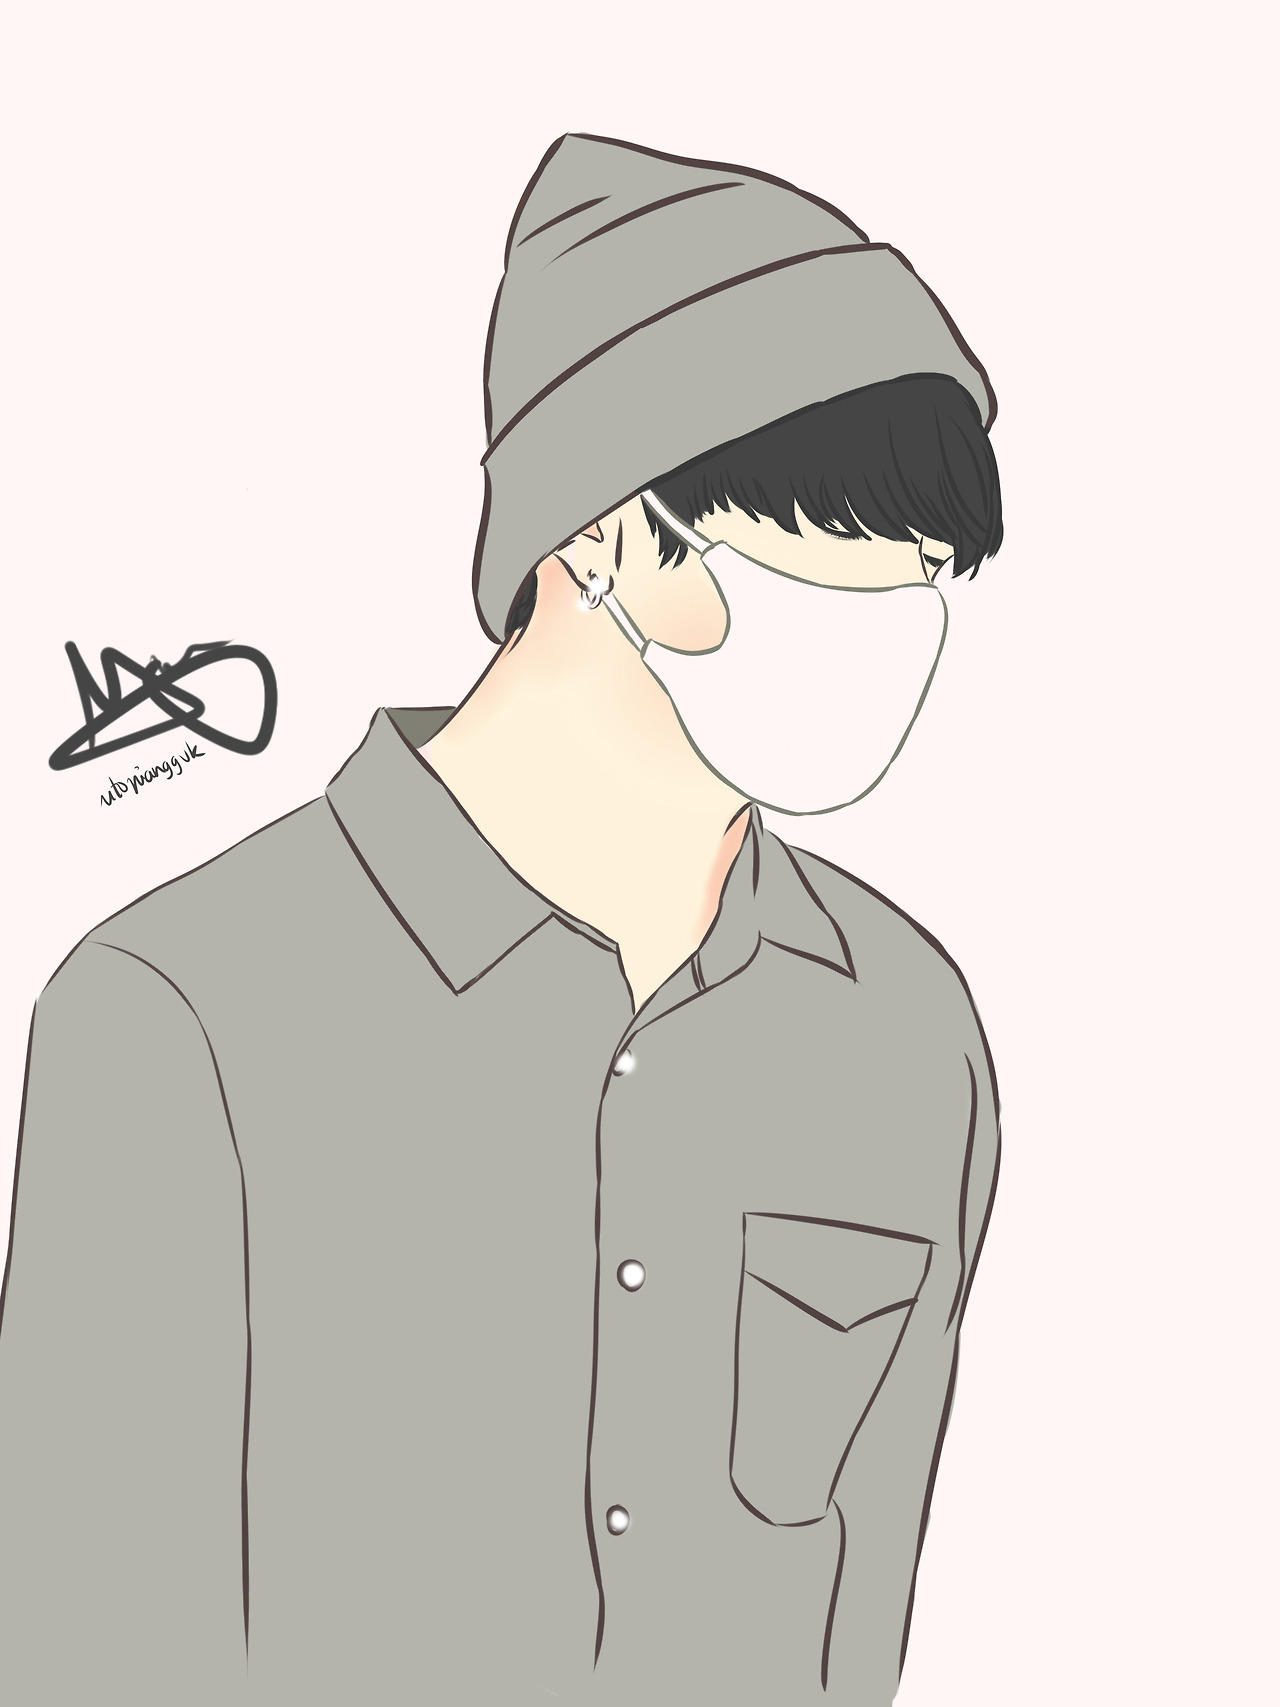 BTS: Jungkook drawing by vivienn-art on DeviantArt